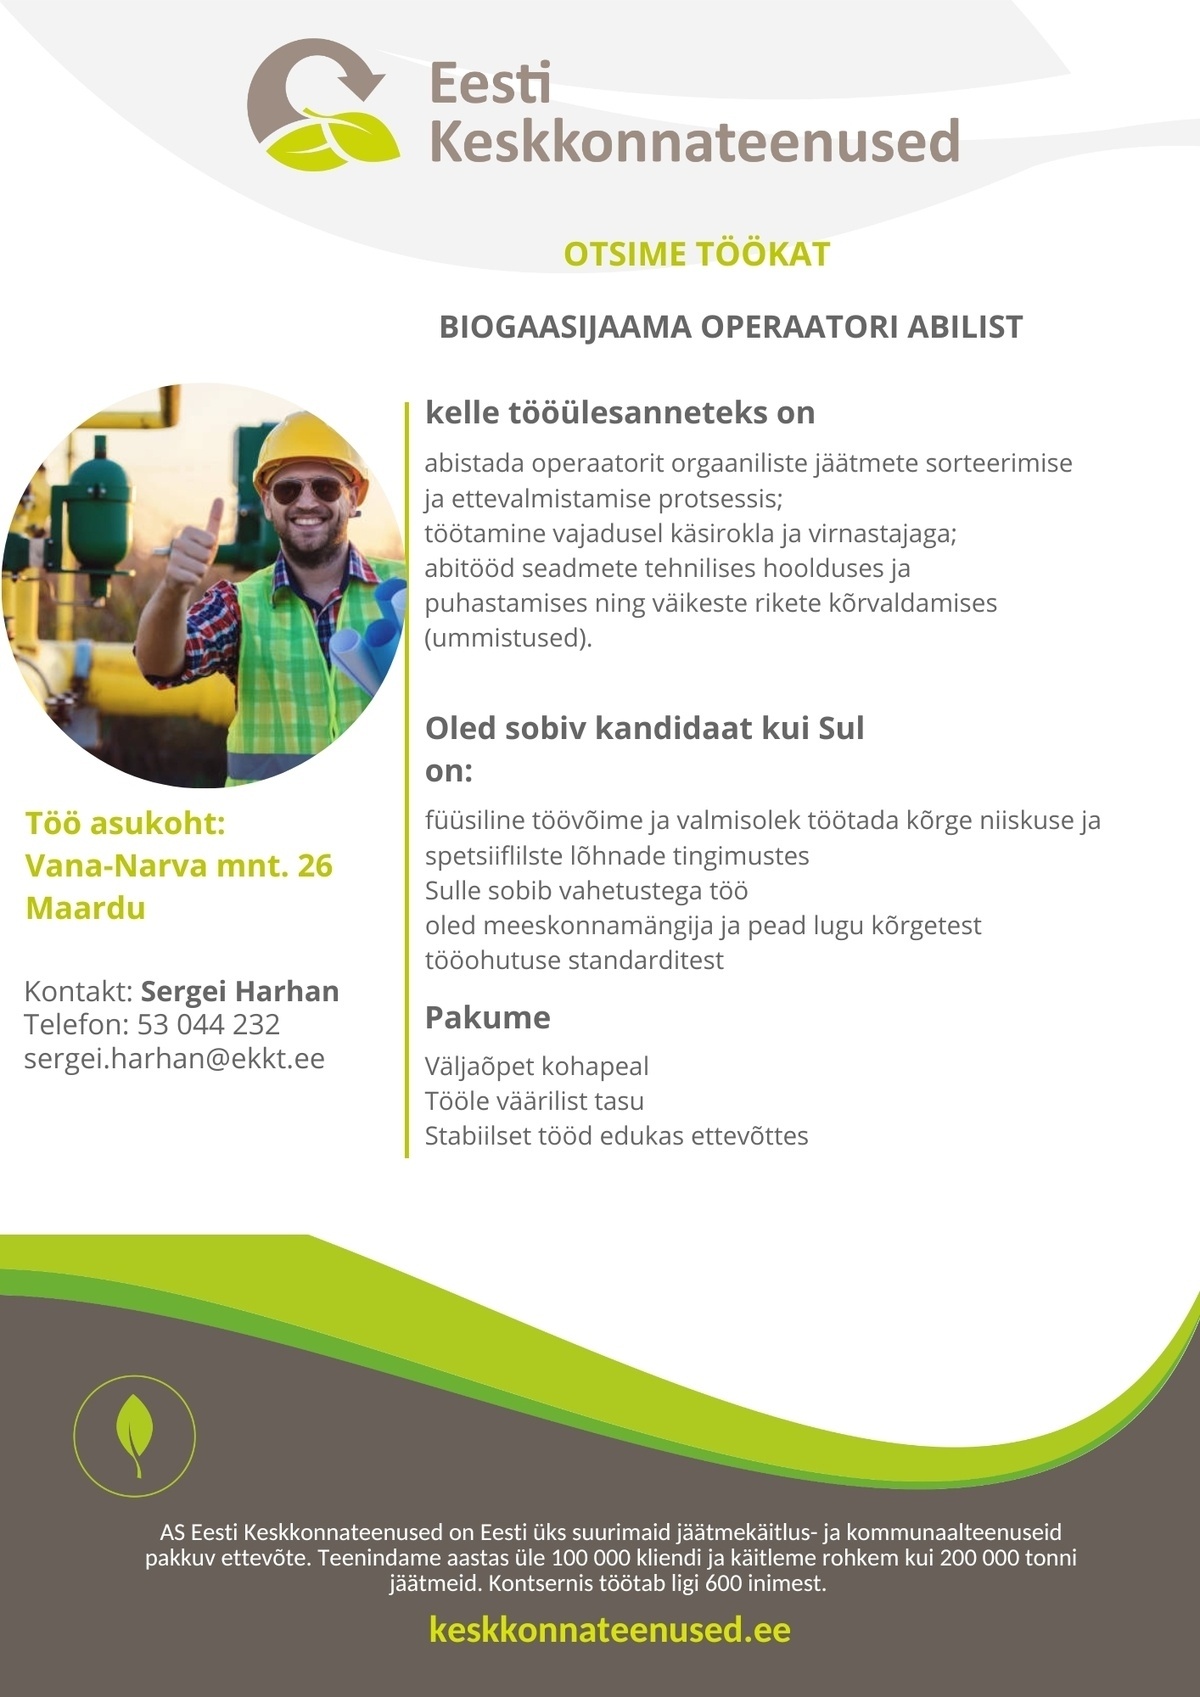 Eesti Keskkonnateenused AS Biogaasijaama operaatori abilist